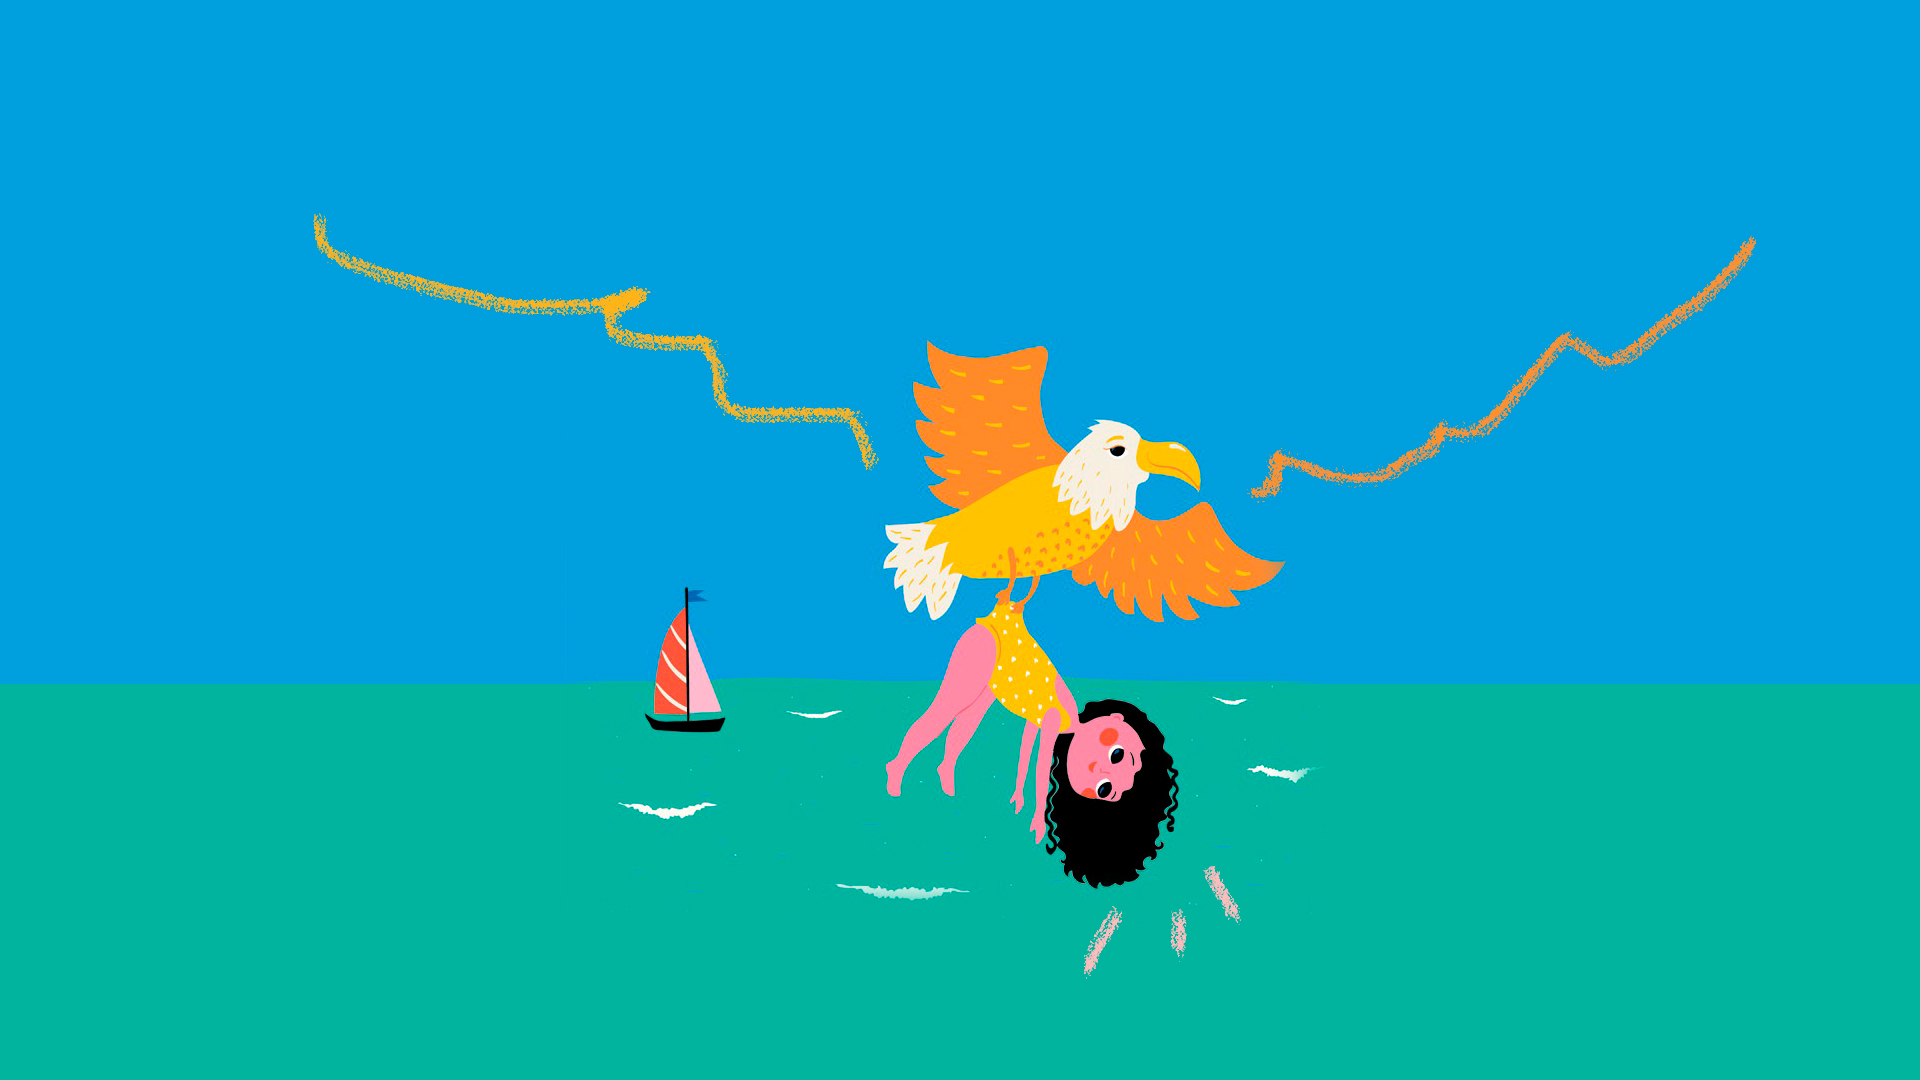 Ilustração do livro A minha mãe vira bicho, de Ana Castro, lançado pela editora Matrescência. Uma menina morena é resgatada por uma águia na praia. Ao fundo, há um barquinho.